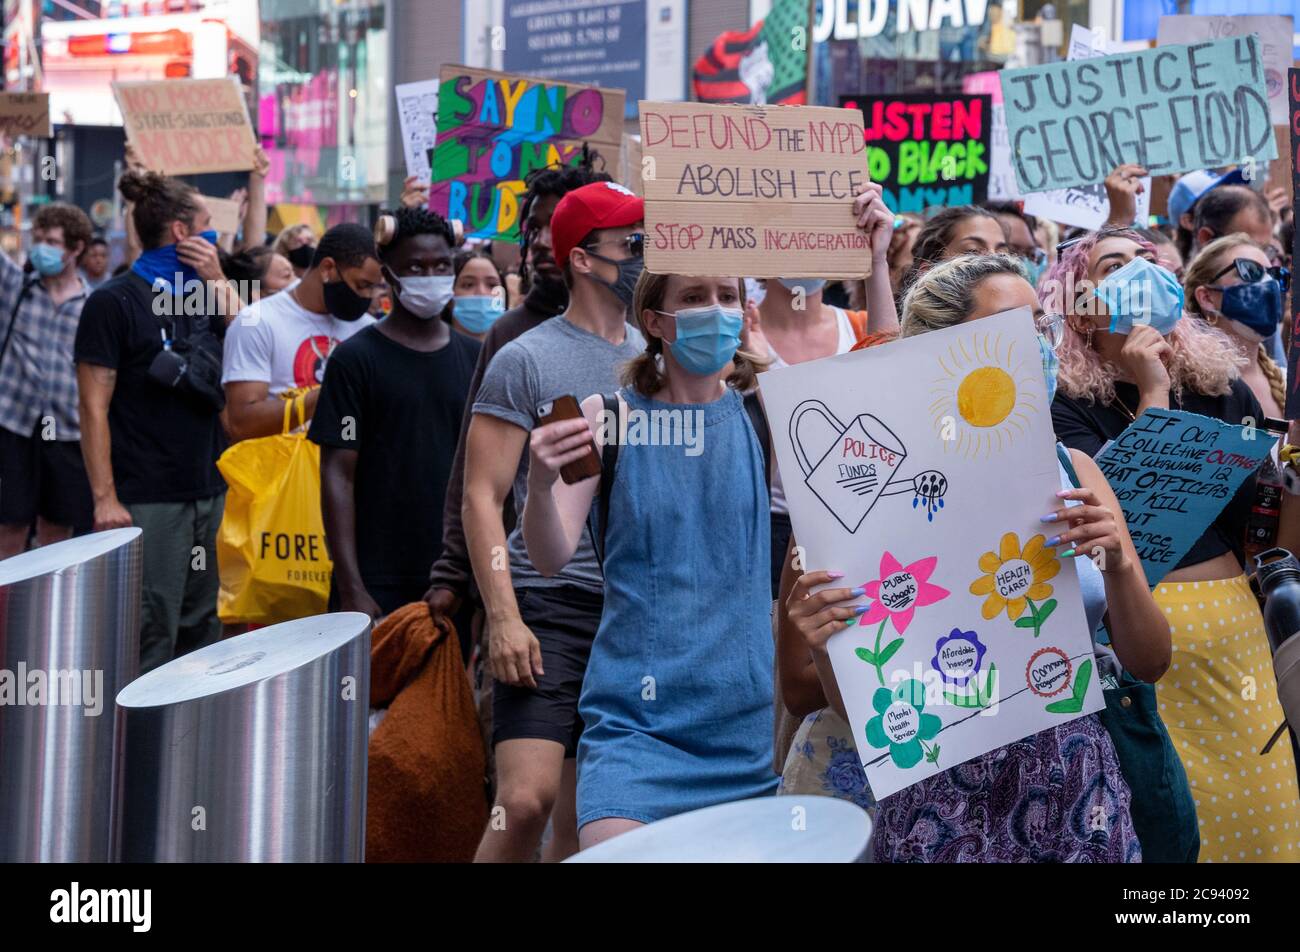 Black Womens/Womxn March Black Lives Matter Protest - foule marchant dans les rues de New York avec des panneaux colorés - Justice 4 George Floyd Banque D'Images